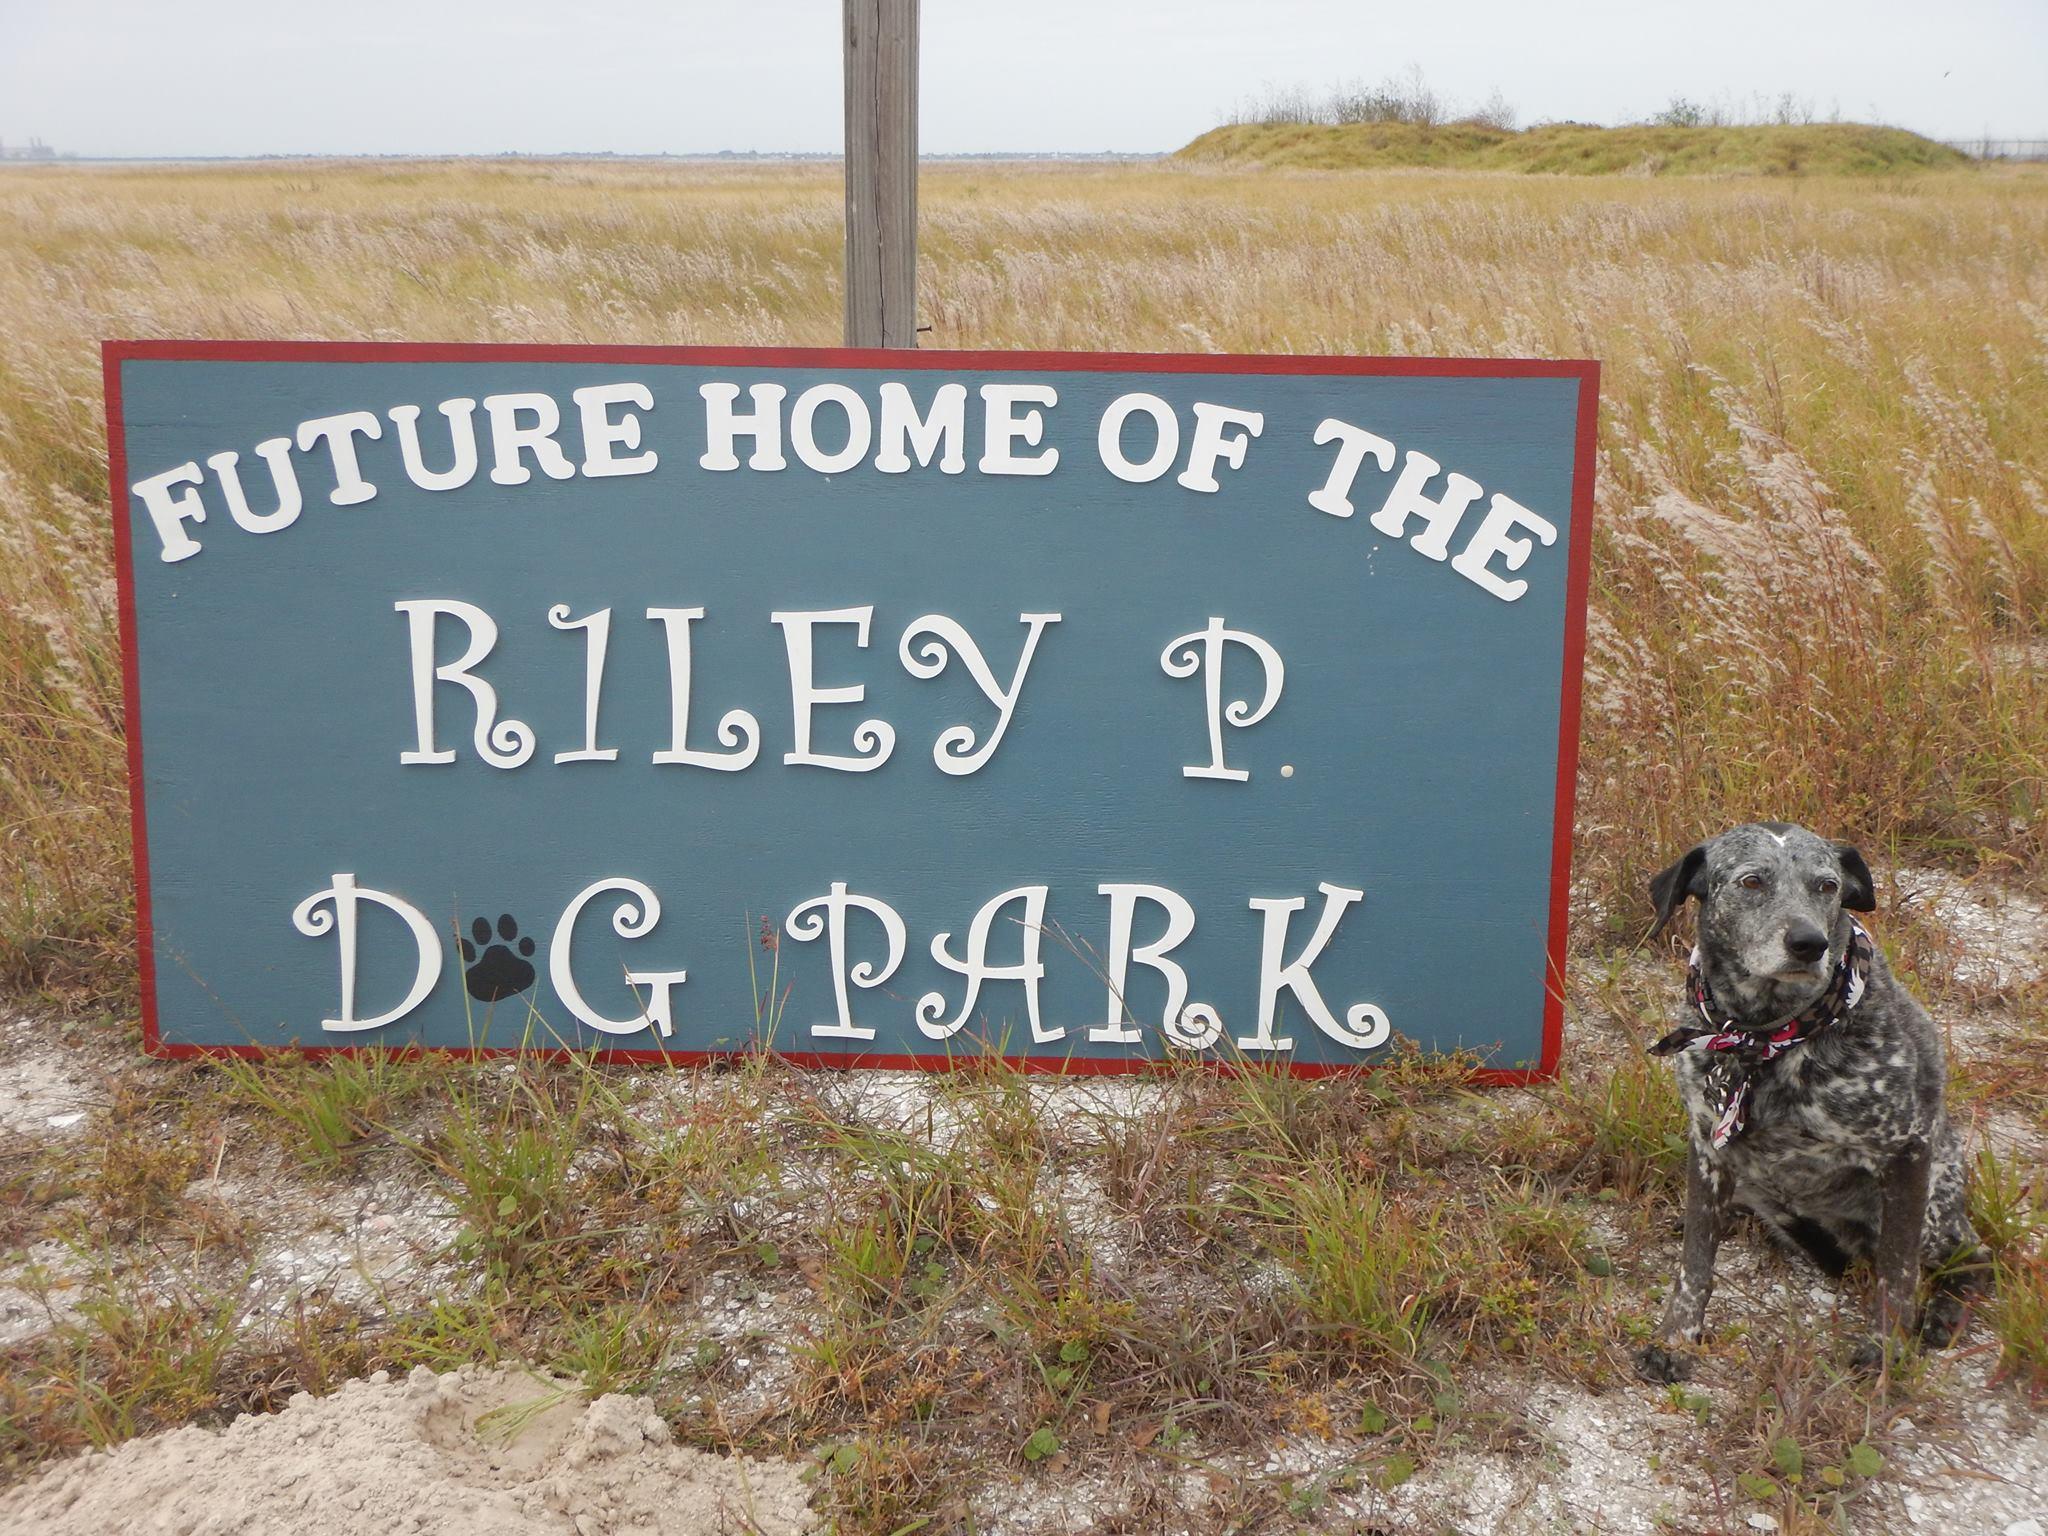 Pet Friendly Riley P Dog Park